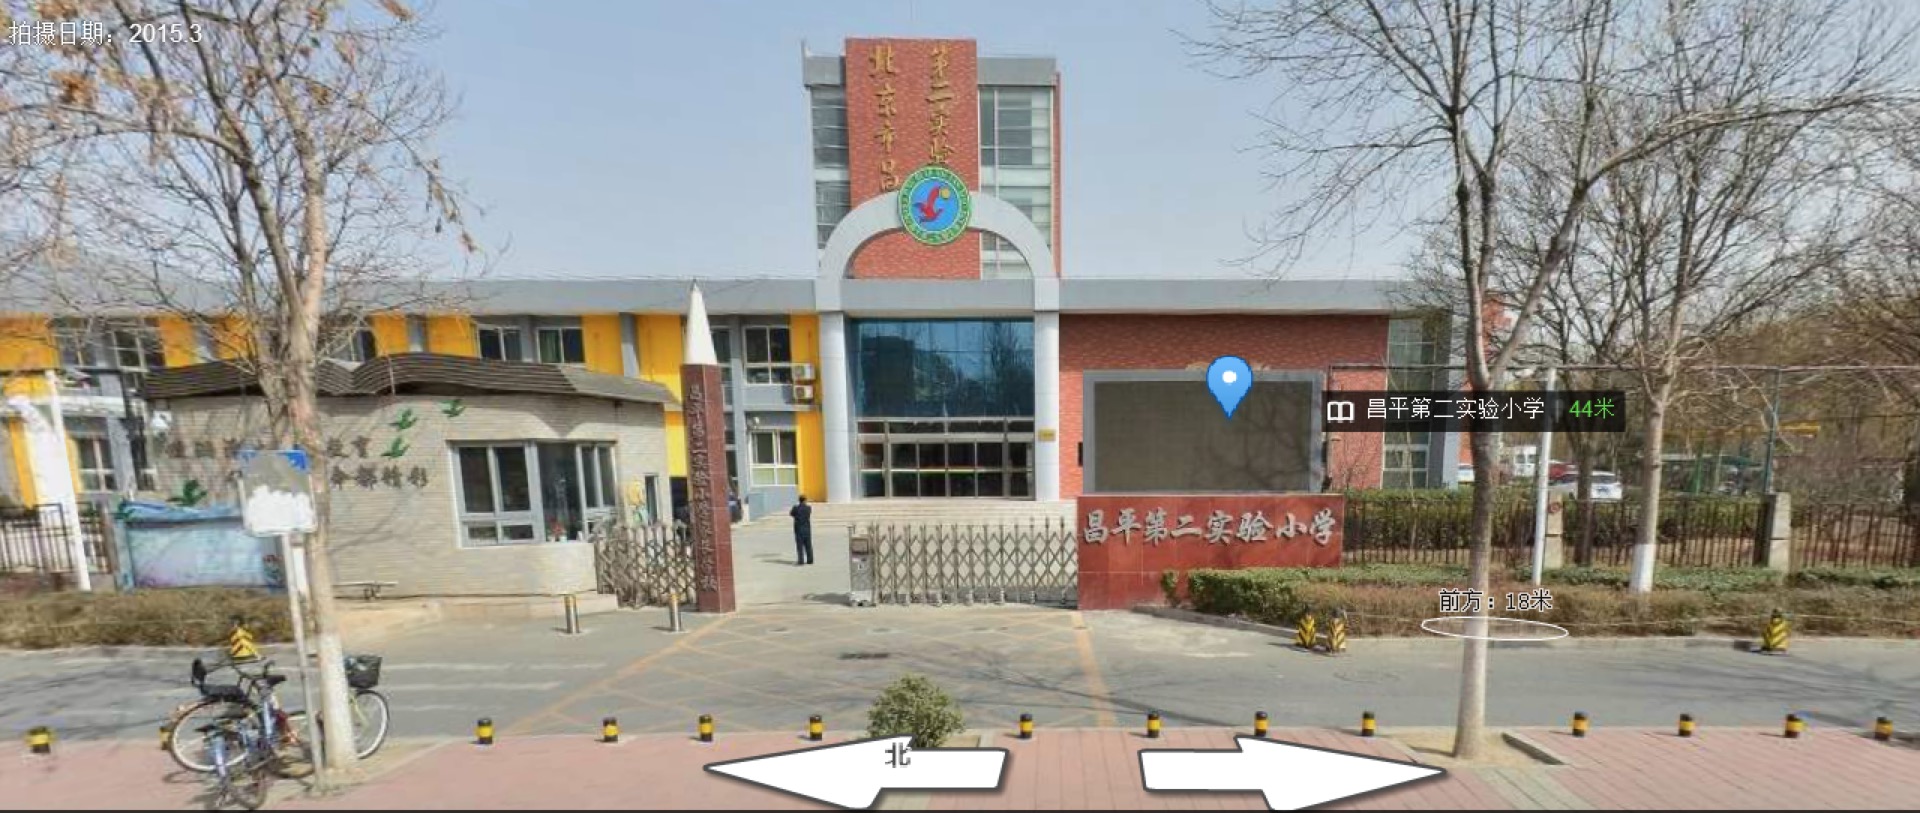 北京市昌平区实验第二实验小学门口街景,与网传图片场景不同.